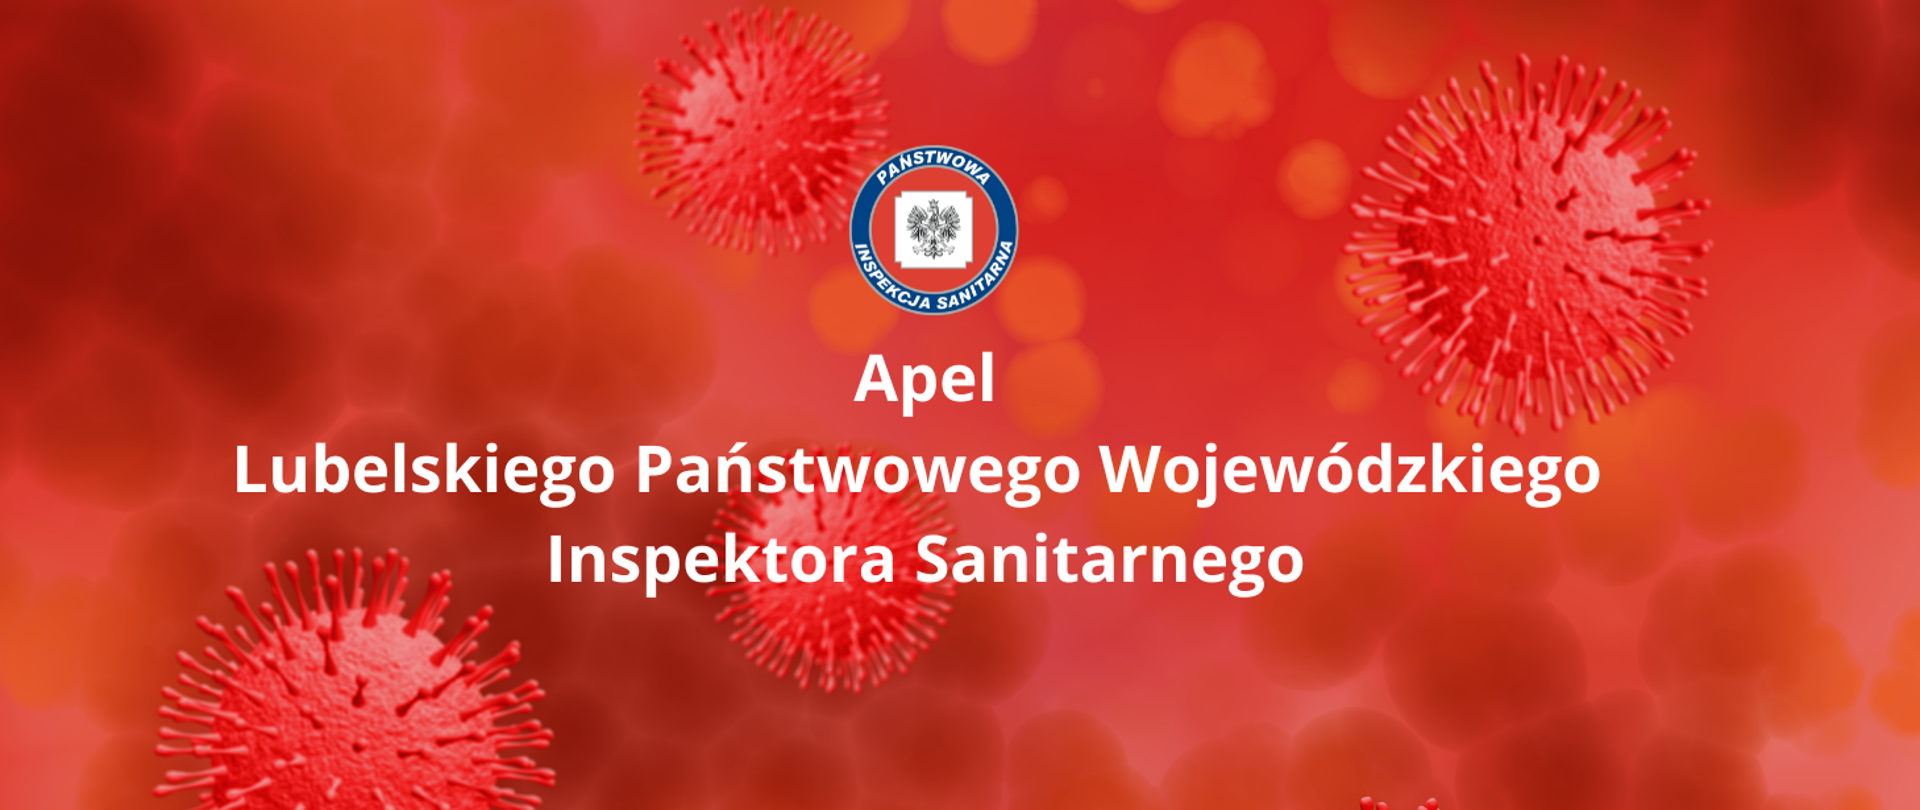 logo inspekcji sanitarnej oraz napis Apel Lubelskiego Państwowego Wojewódzkiego Inspektora Sanitarnego